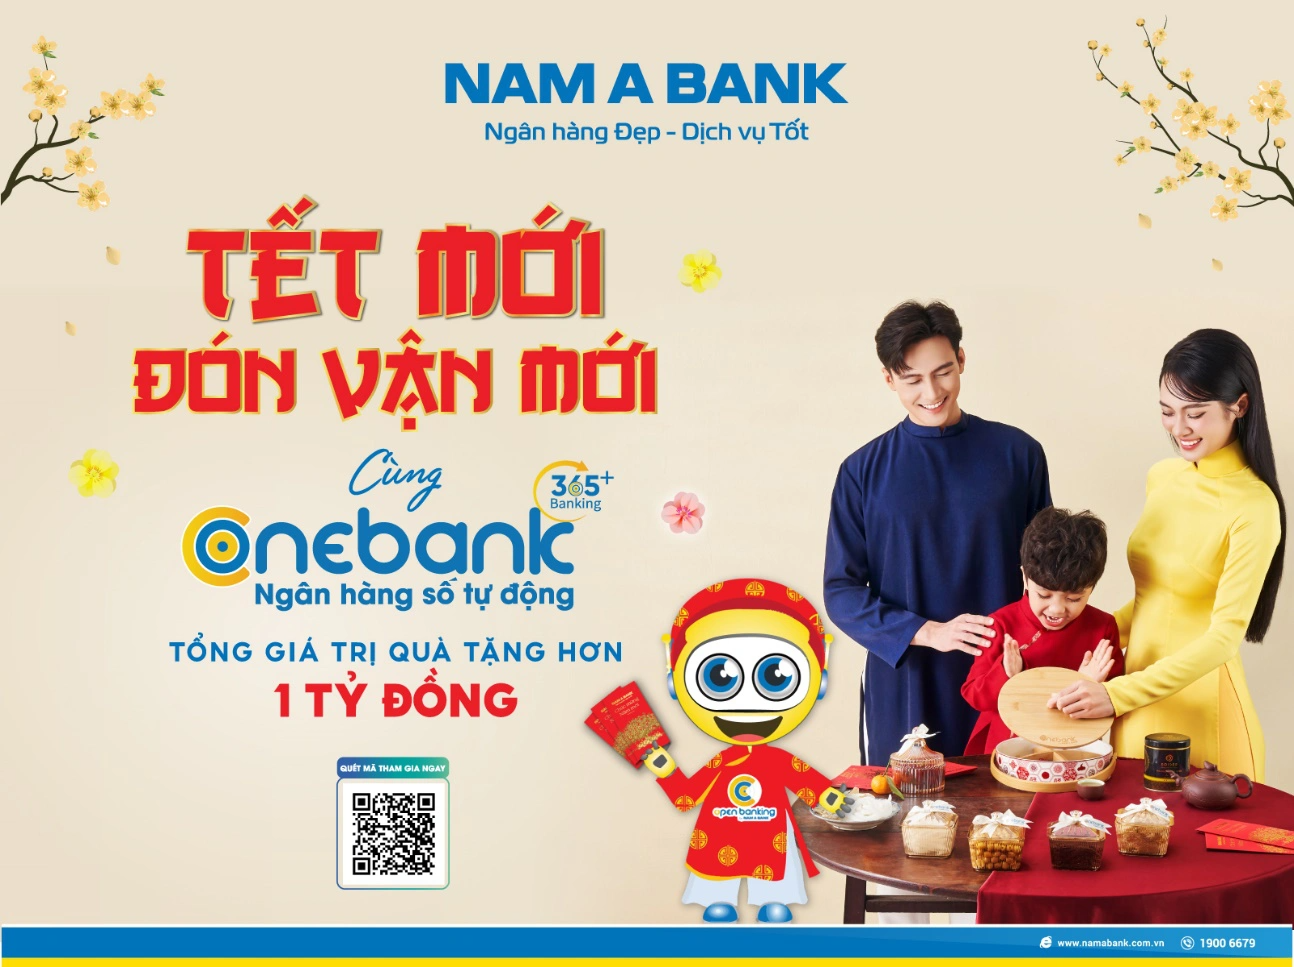 ONEBANK by Nam A Bank tung ưu đãi cho khách hàng dịp Tết - Ảnh 1.